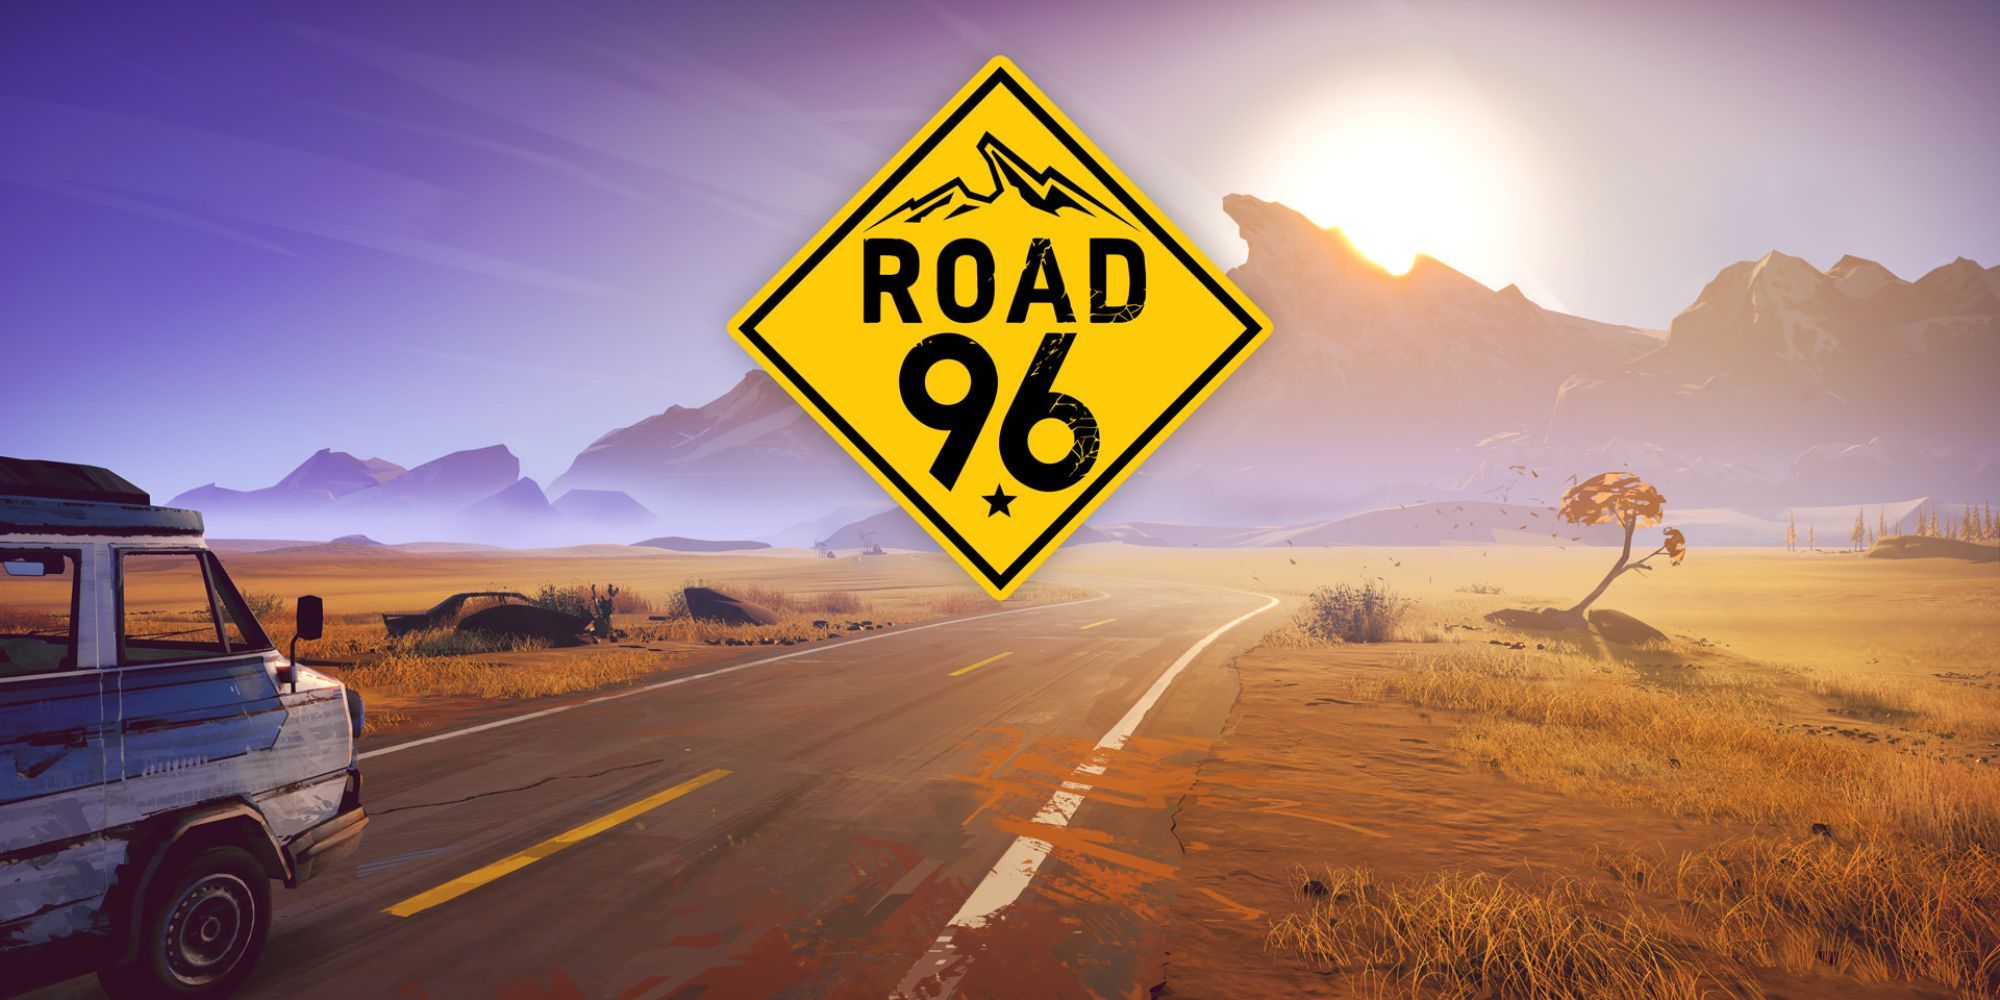 Road 96 Cover Art Of The Long Desert Road